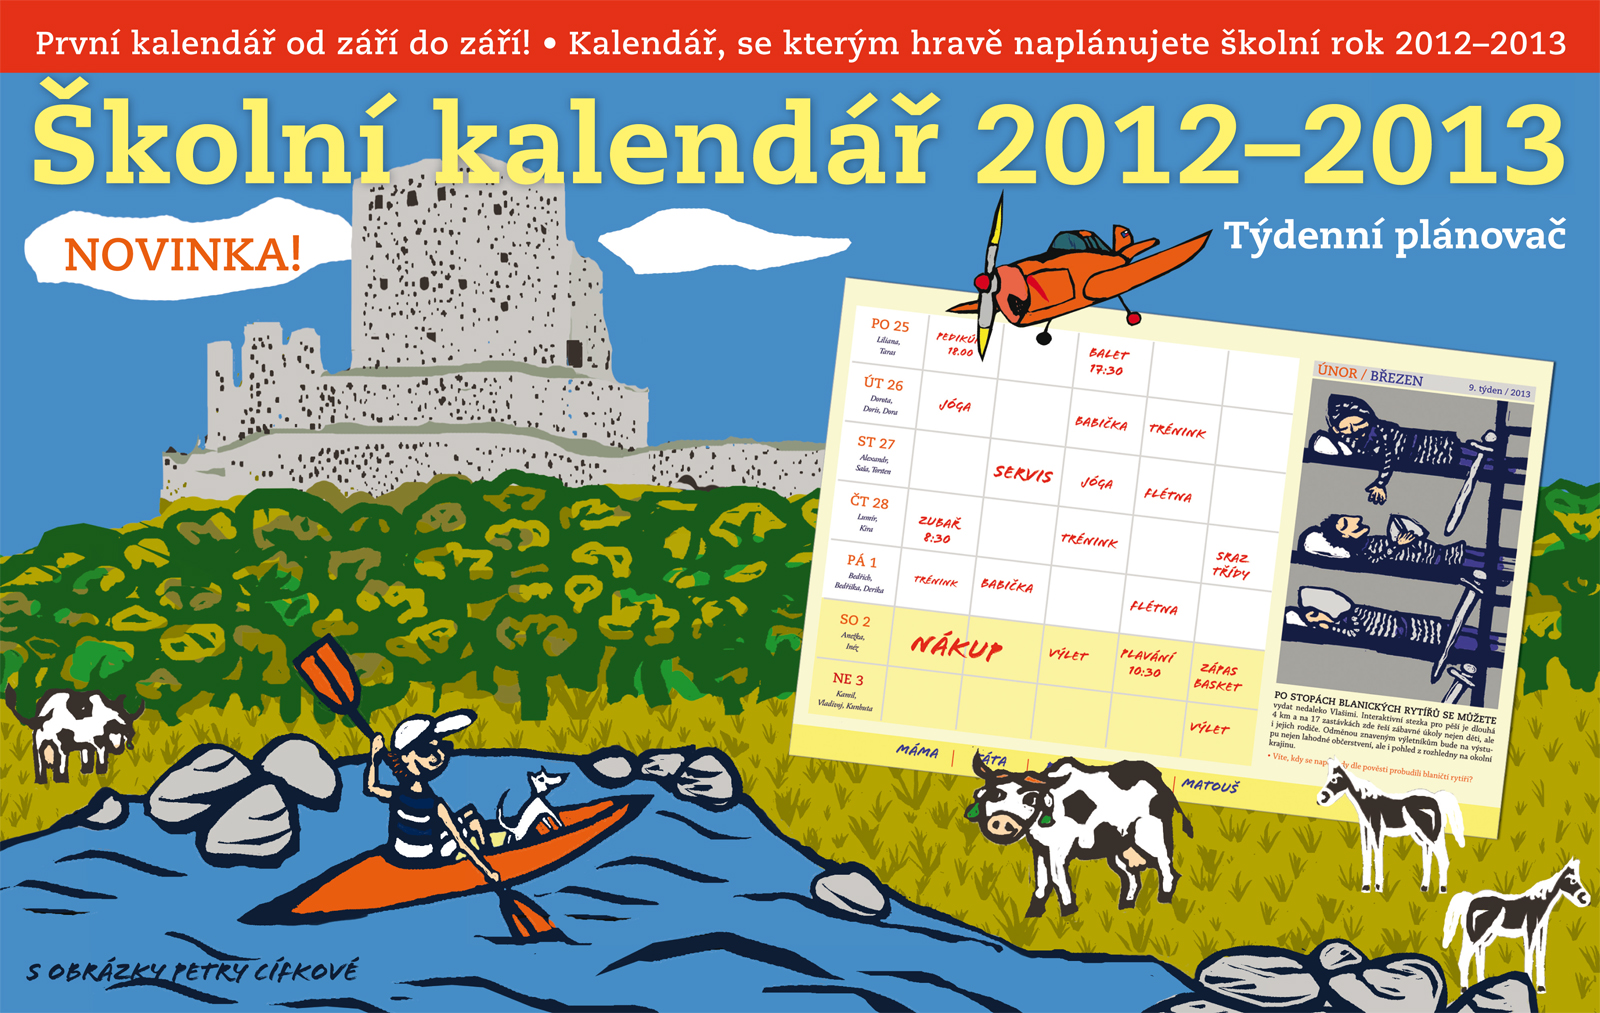 Kalendáře 2012-2013 jsou již v prodeji